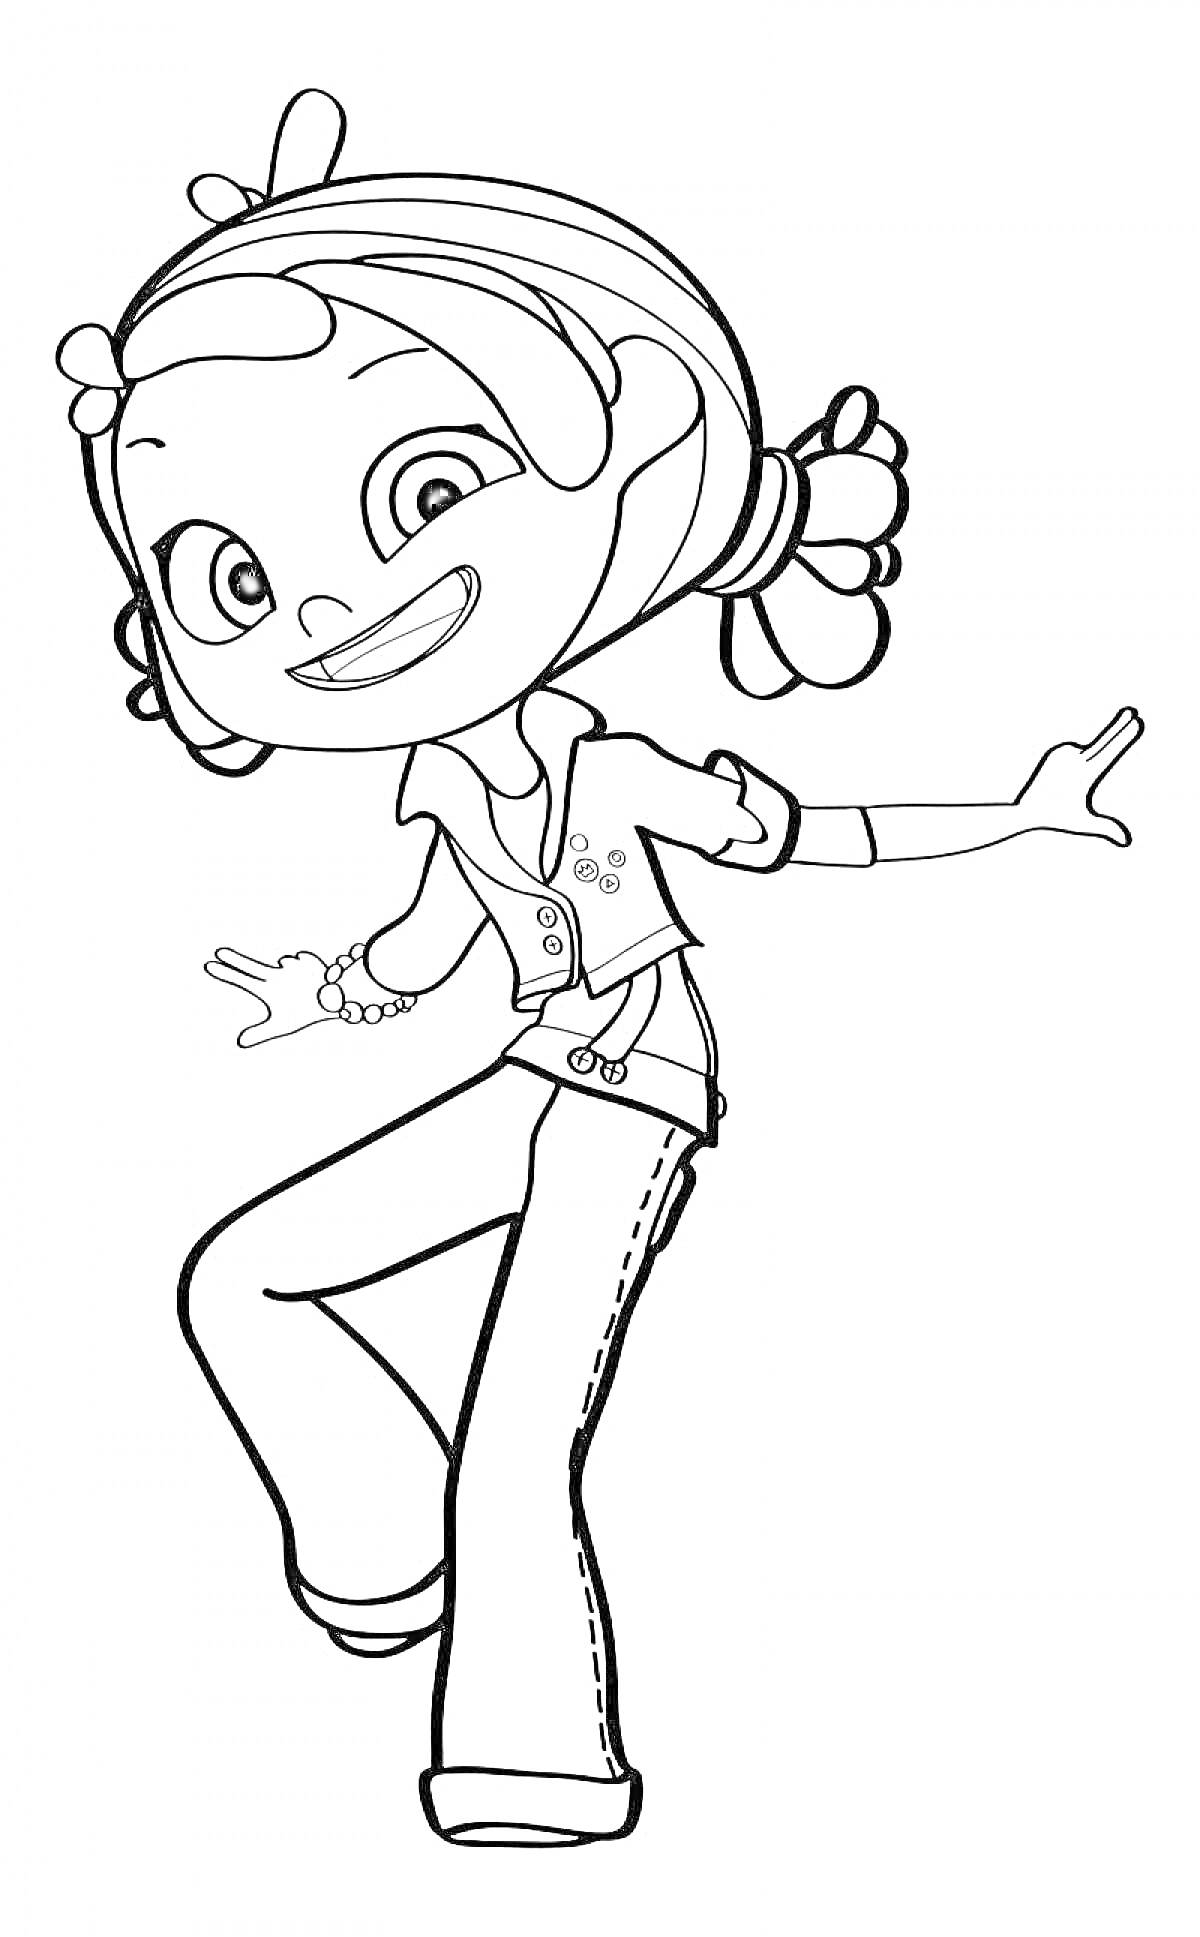 Раскраска Девочка из сказочного патруля в динамичной позе с браслетом и бантиками в волосах